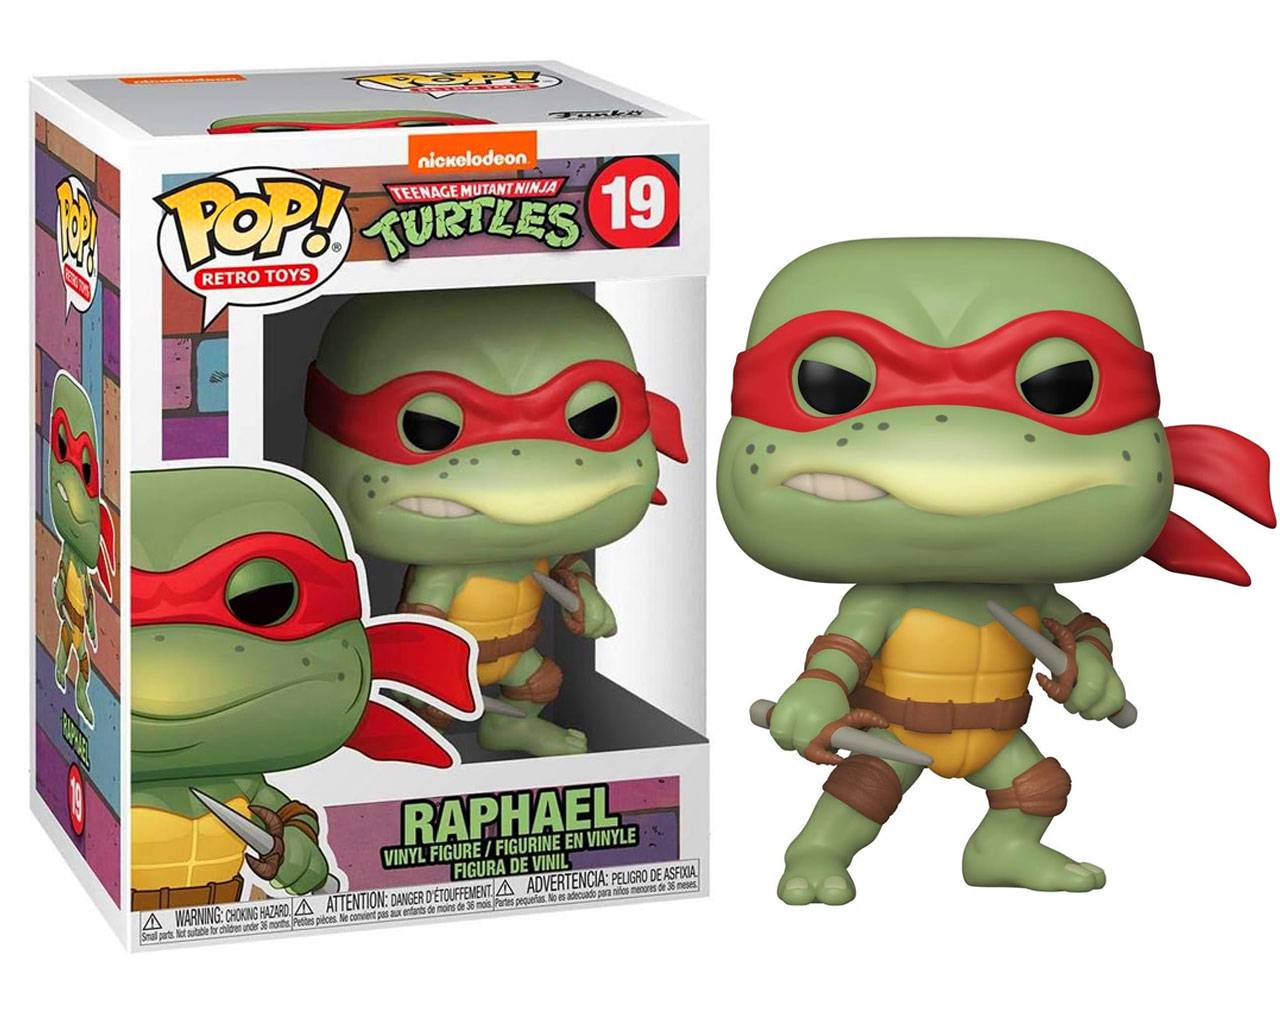 Raphael (Retro) - Teenage Mutant Ninja Turtles Pop! Vinyl